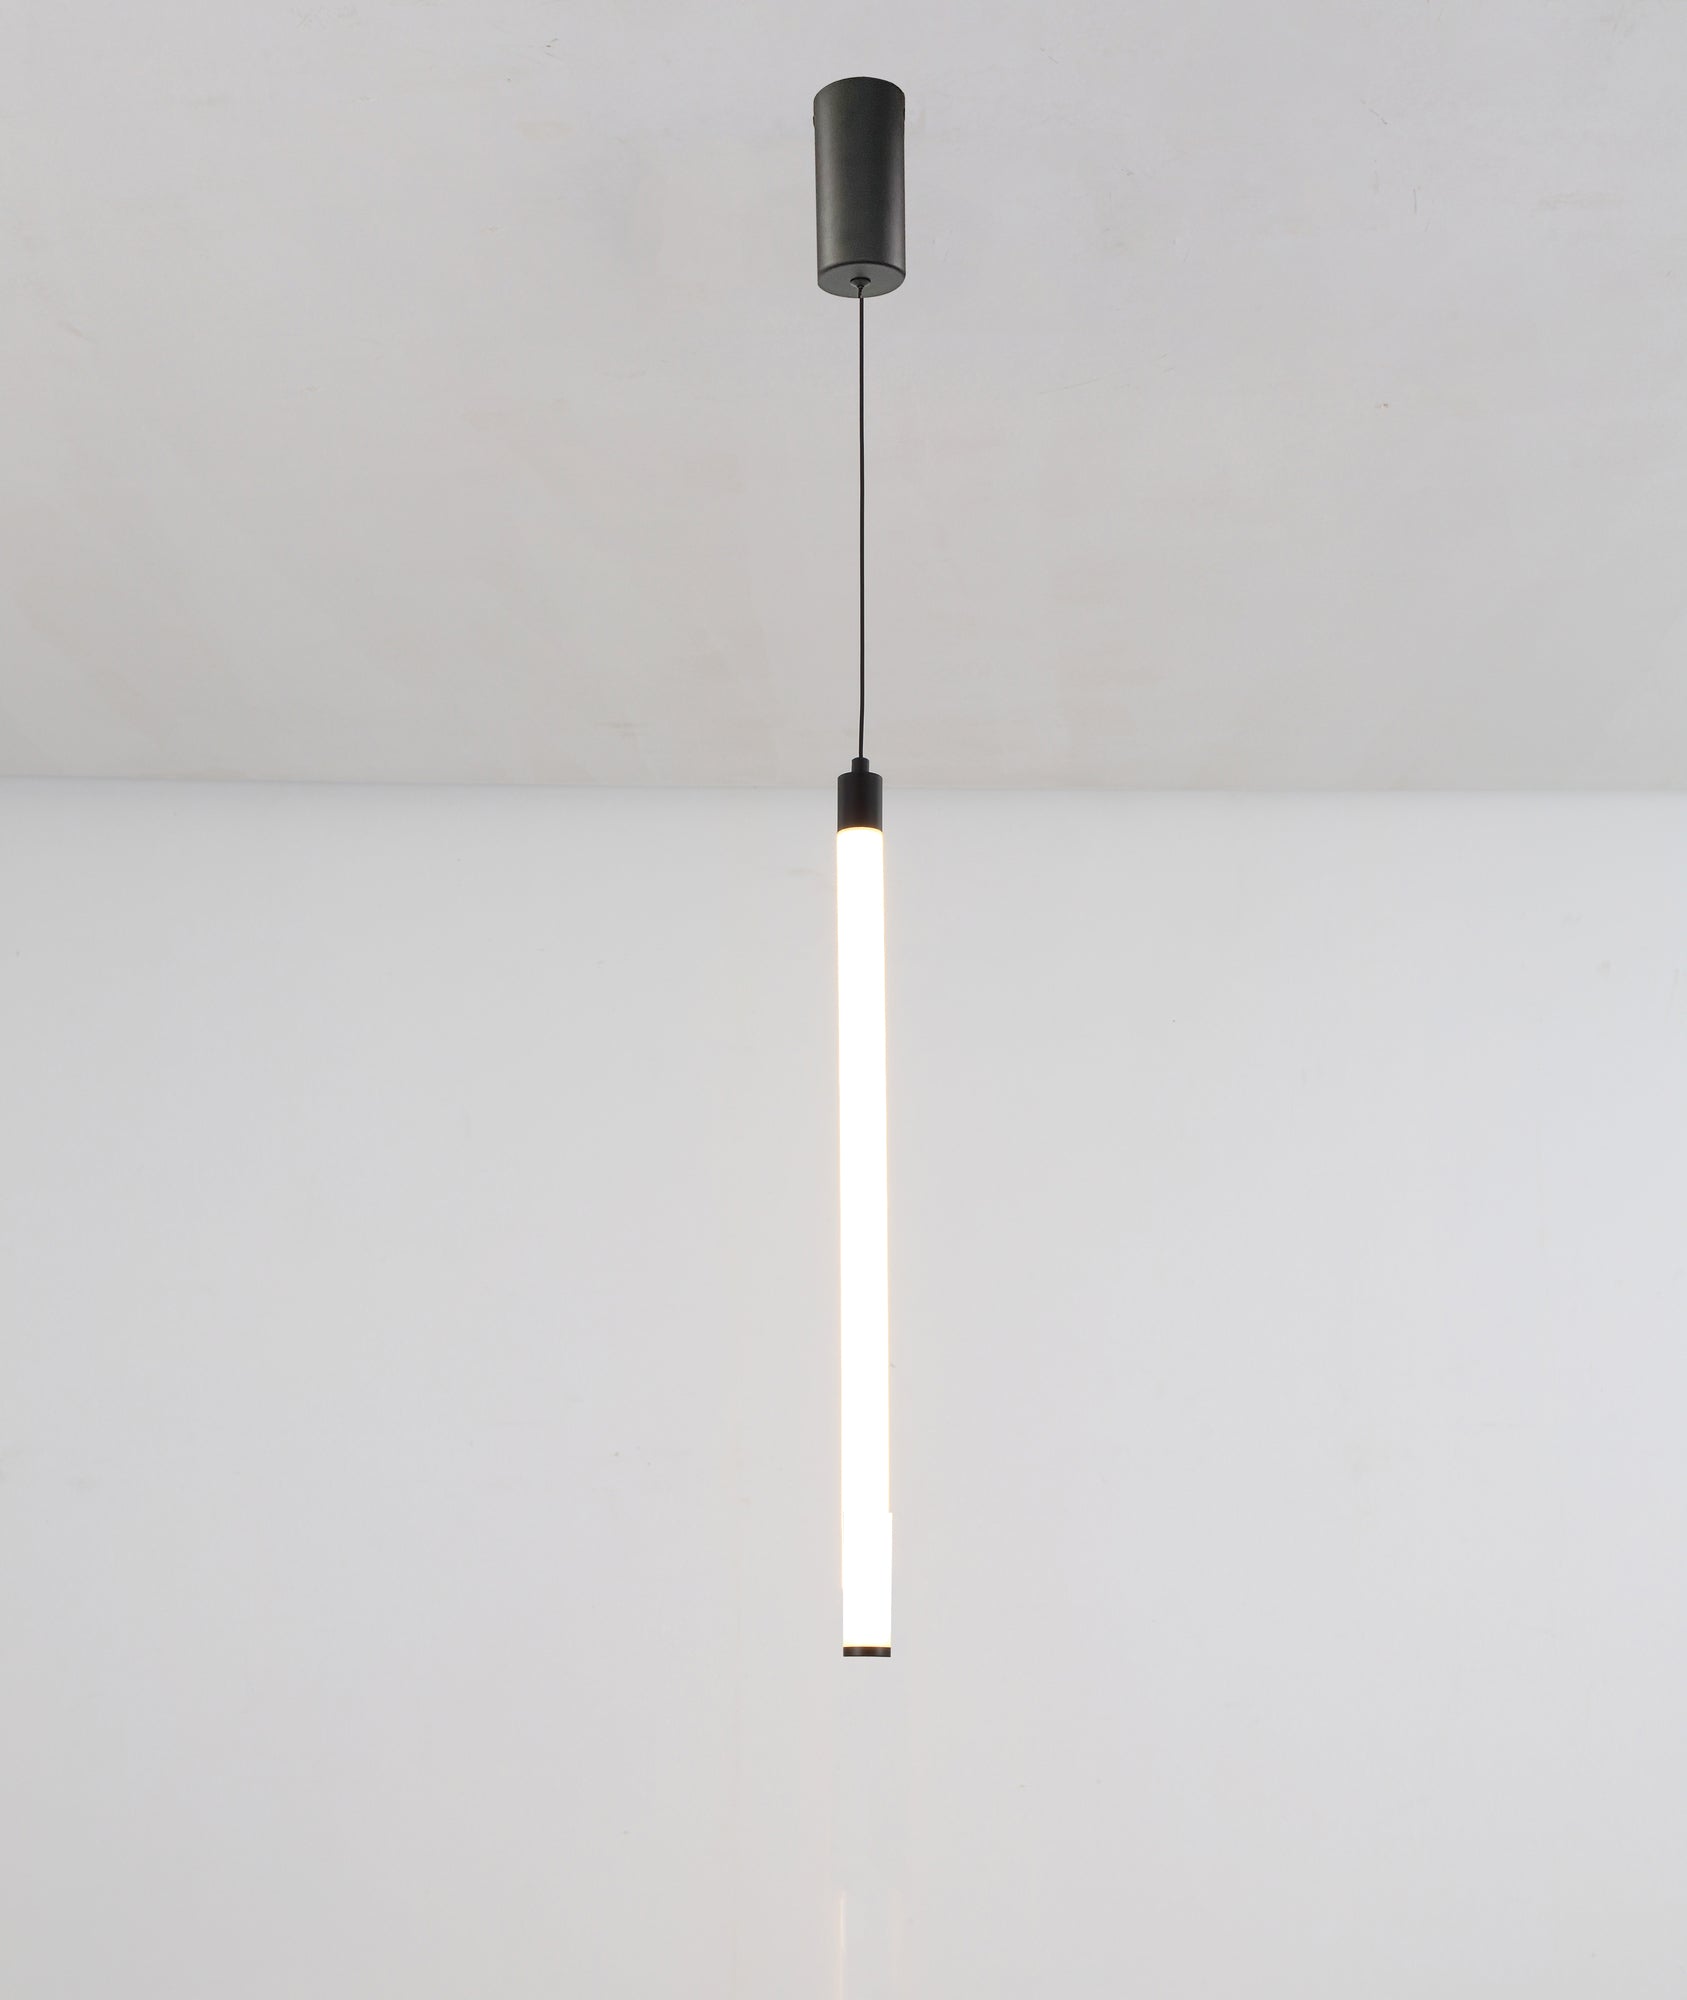 Ray Medium/Large LED Hanging Light - White/Gold/Black Finish